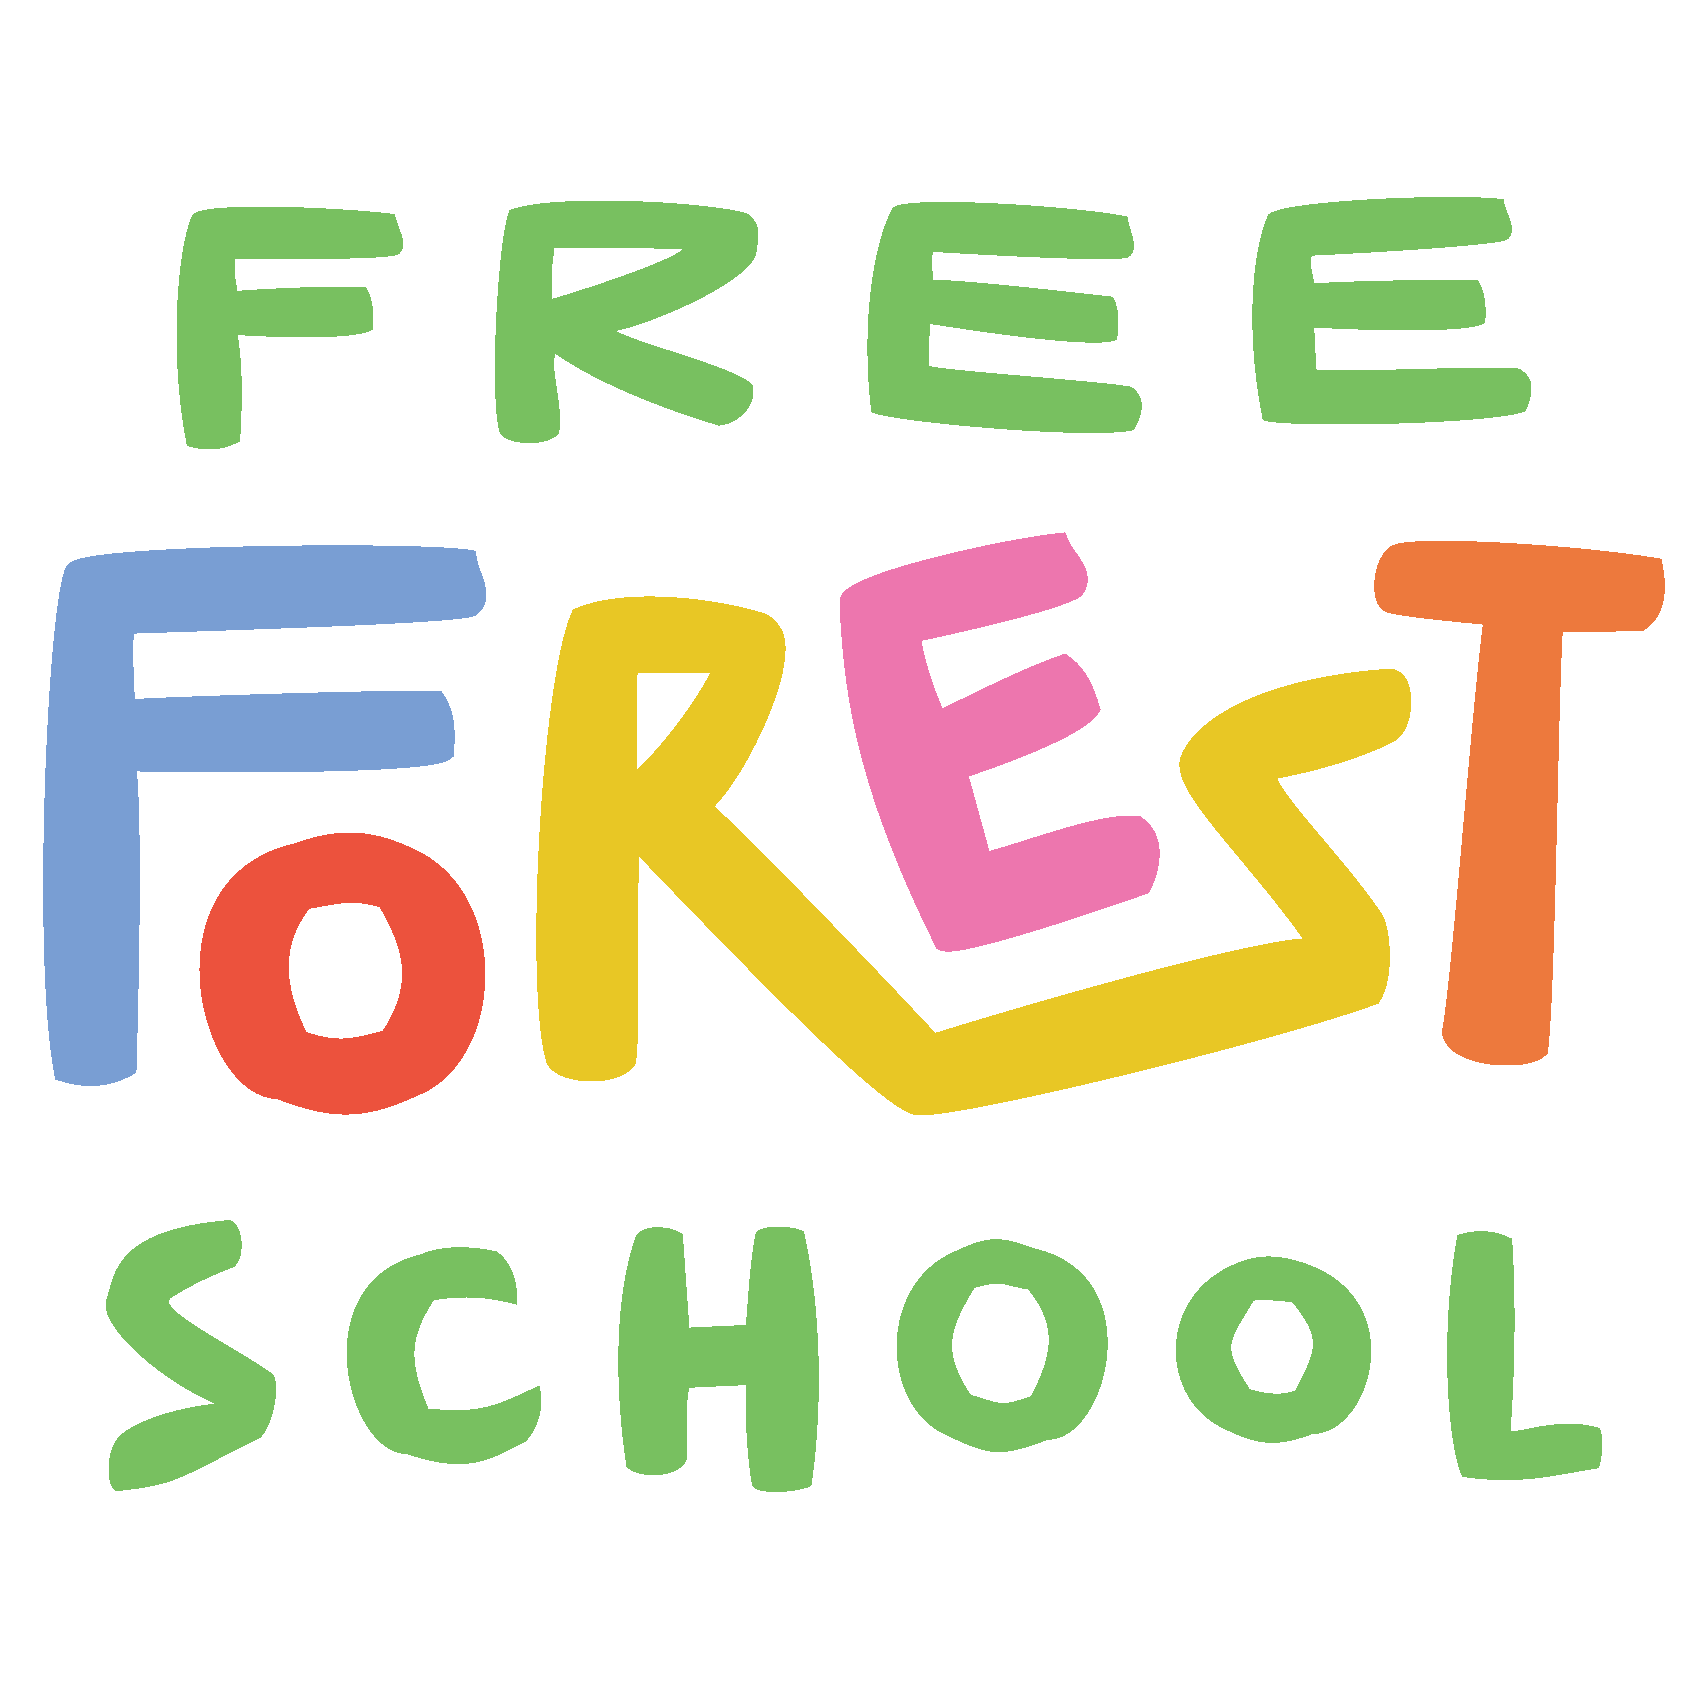 Freeforest